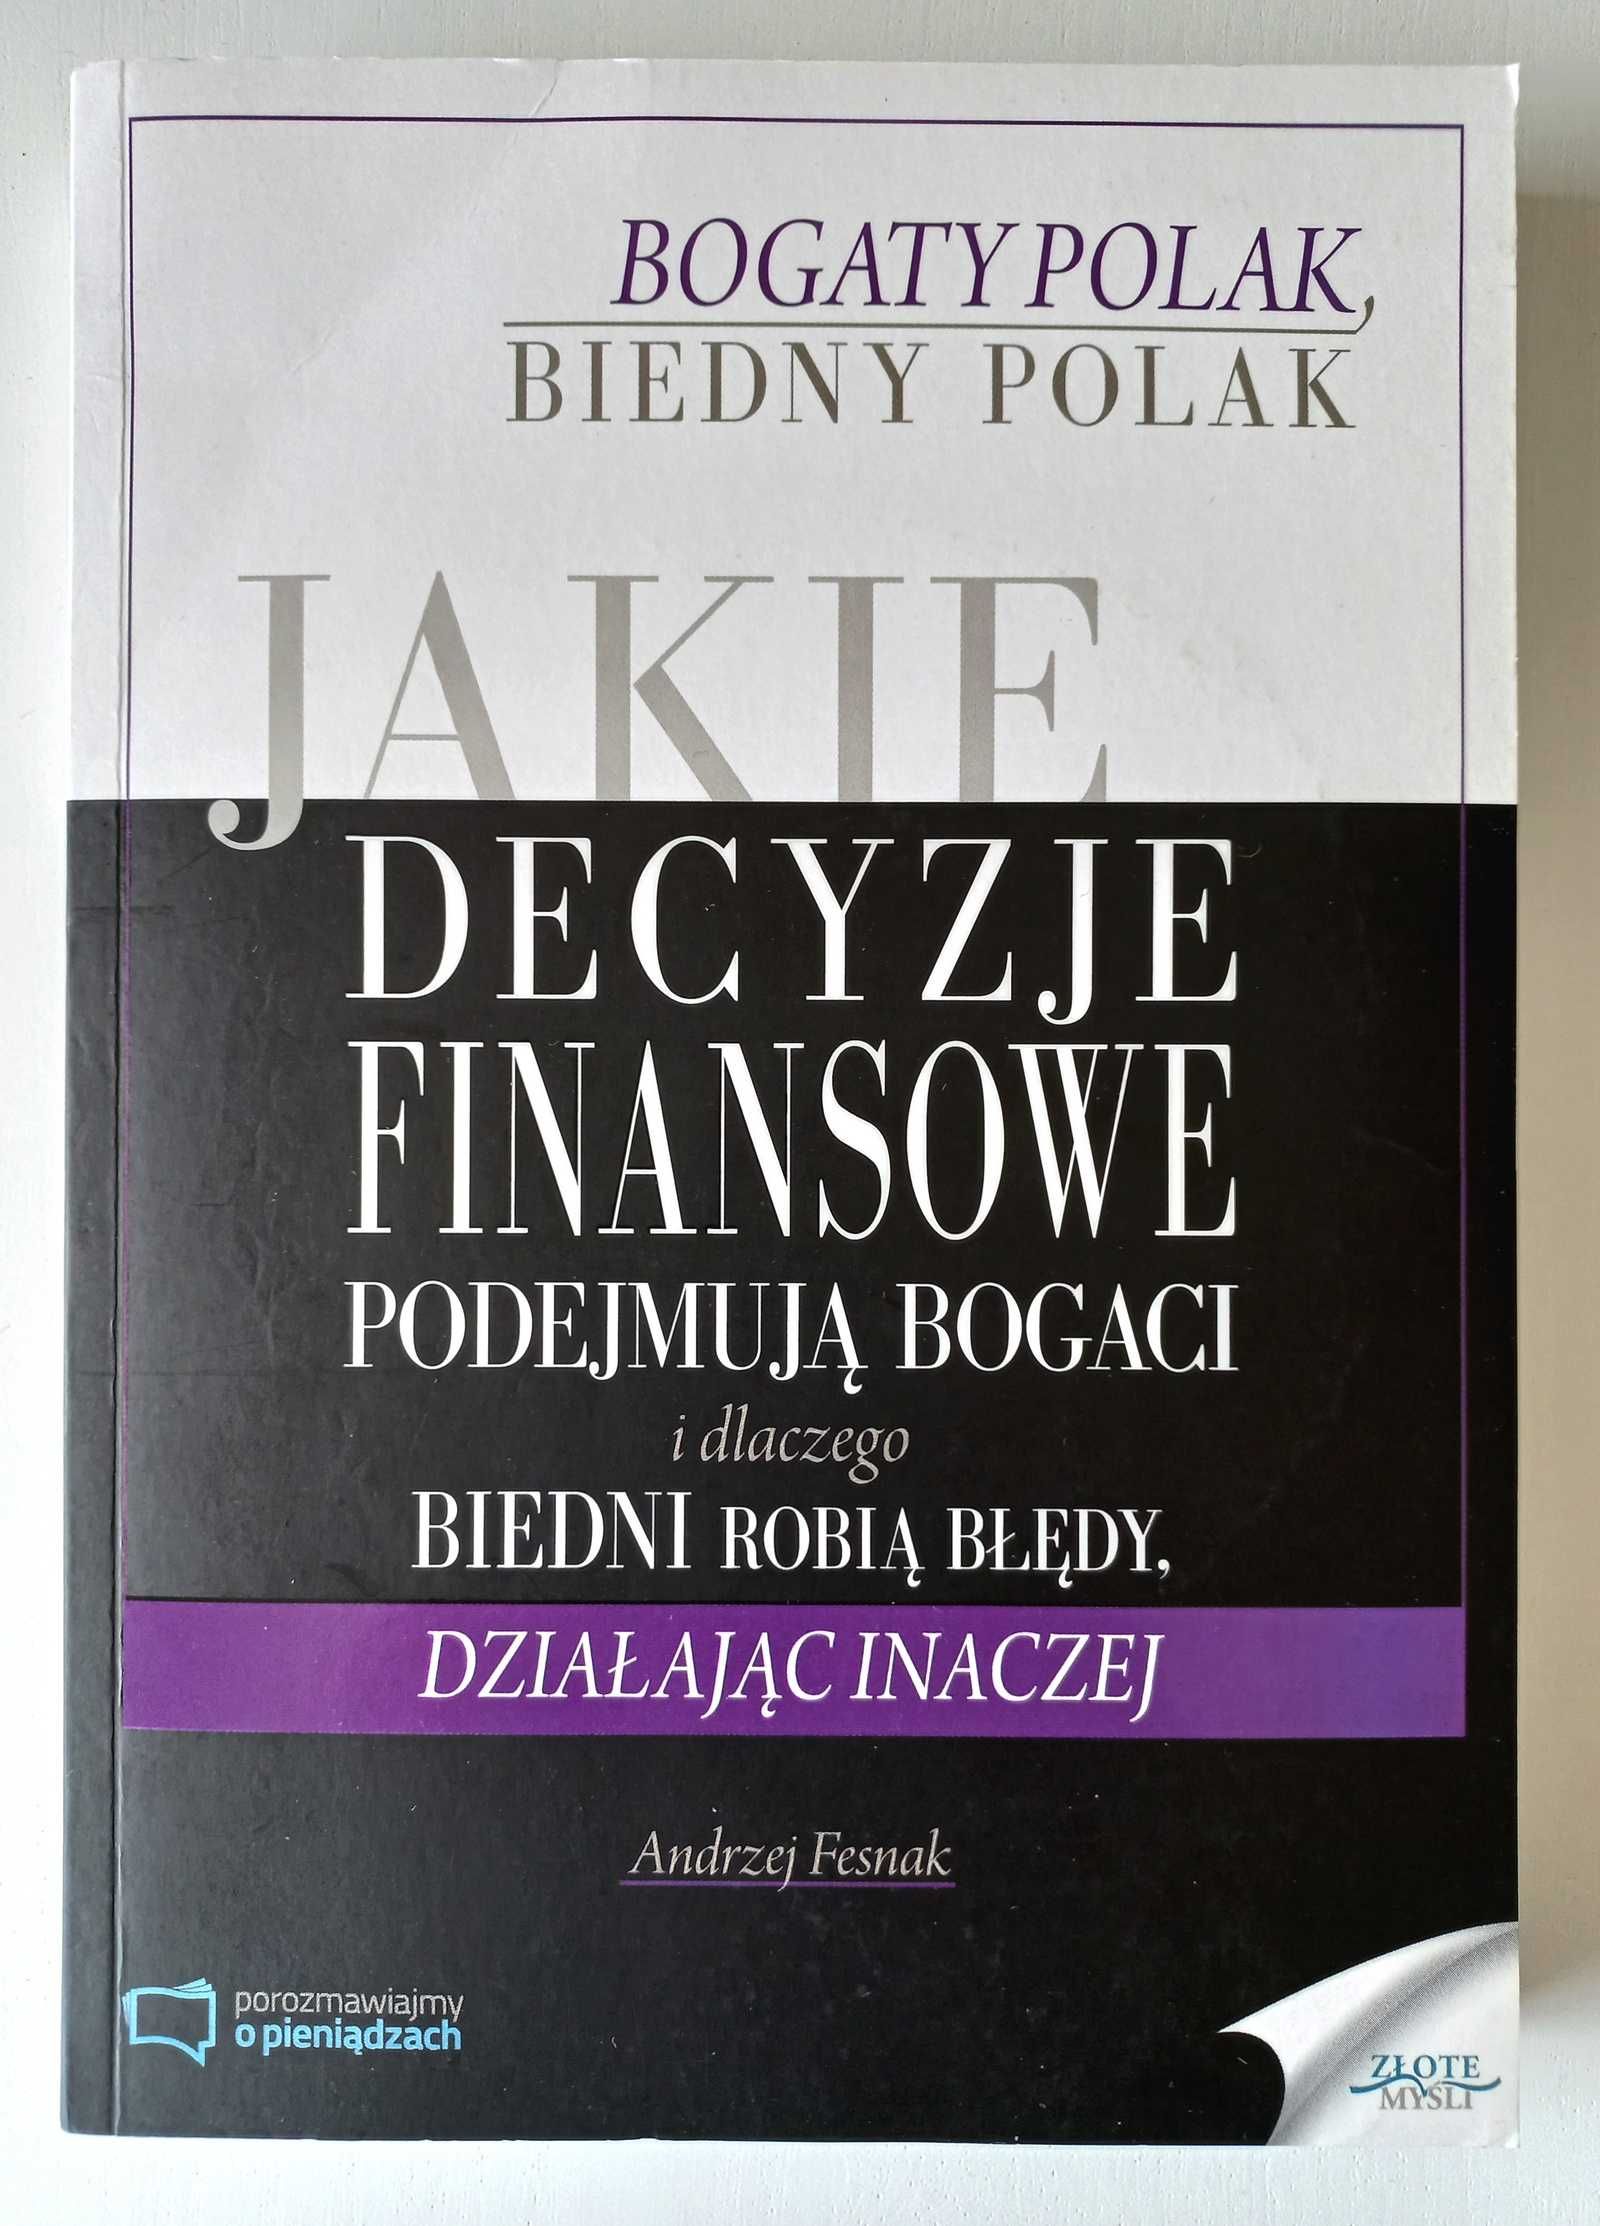 Andrzej Fesnak "Jakie decyzje finansowe podejmują bogaci" + DVD